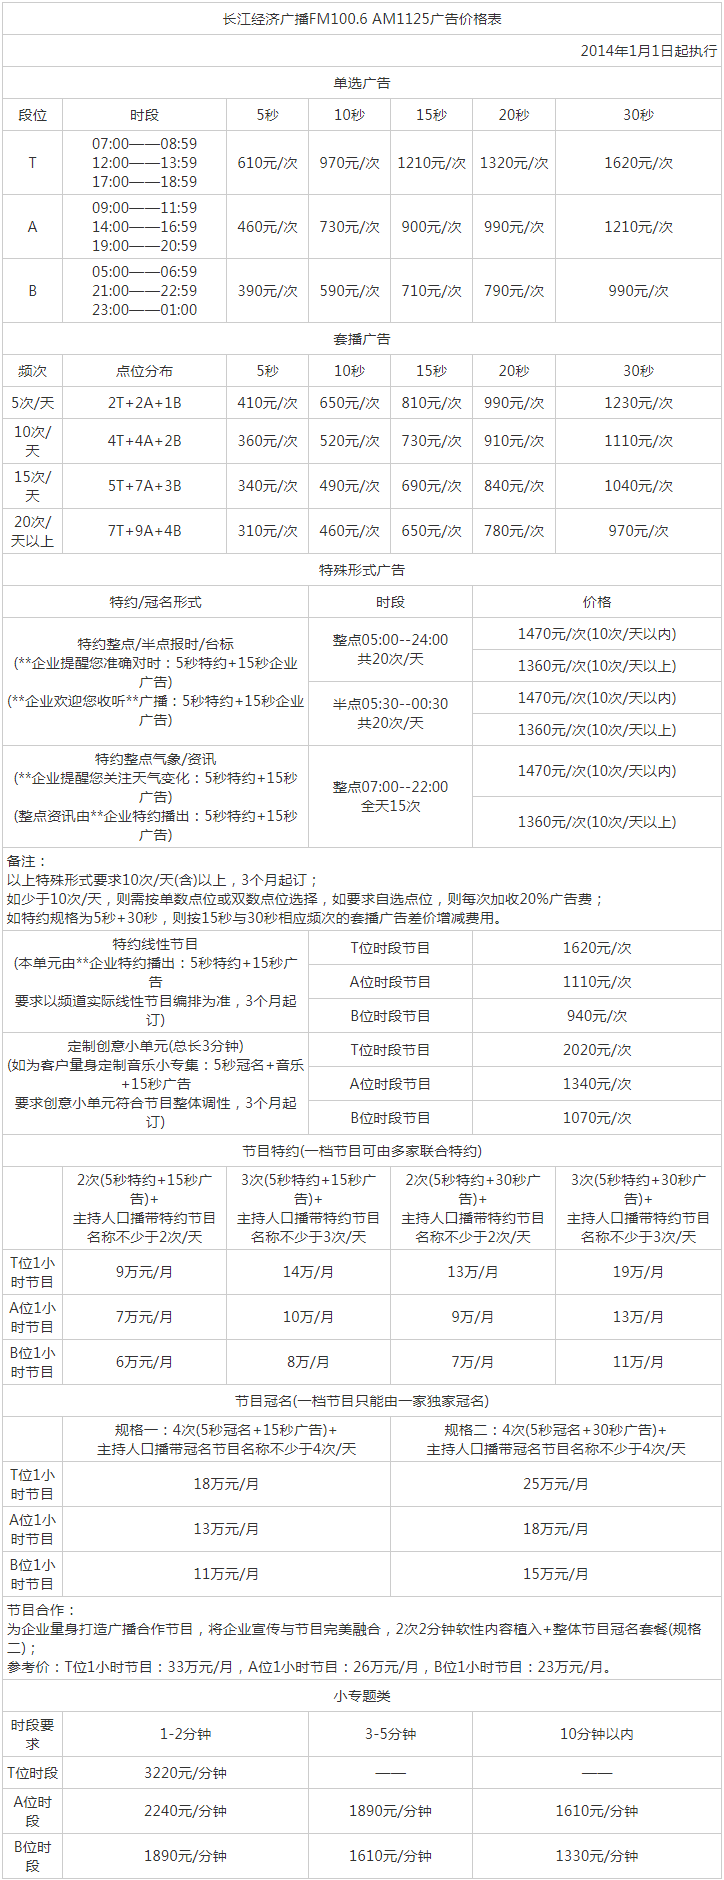 2014武汉人民广播电台长江经济频道FM100.6 AM1125广告报价表.png